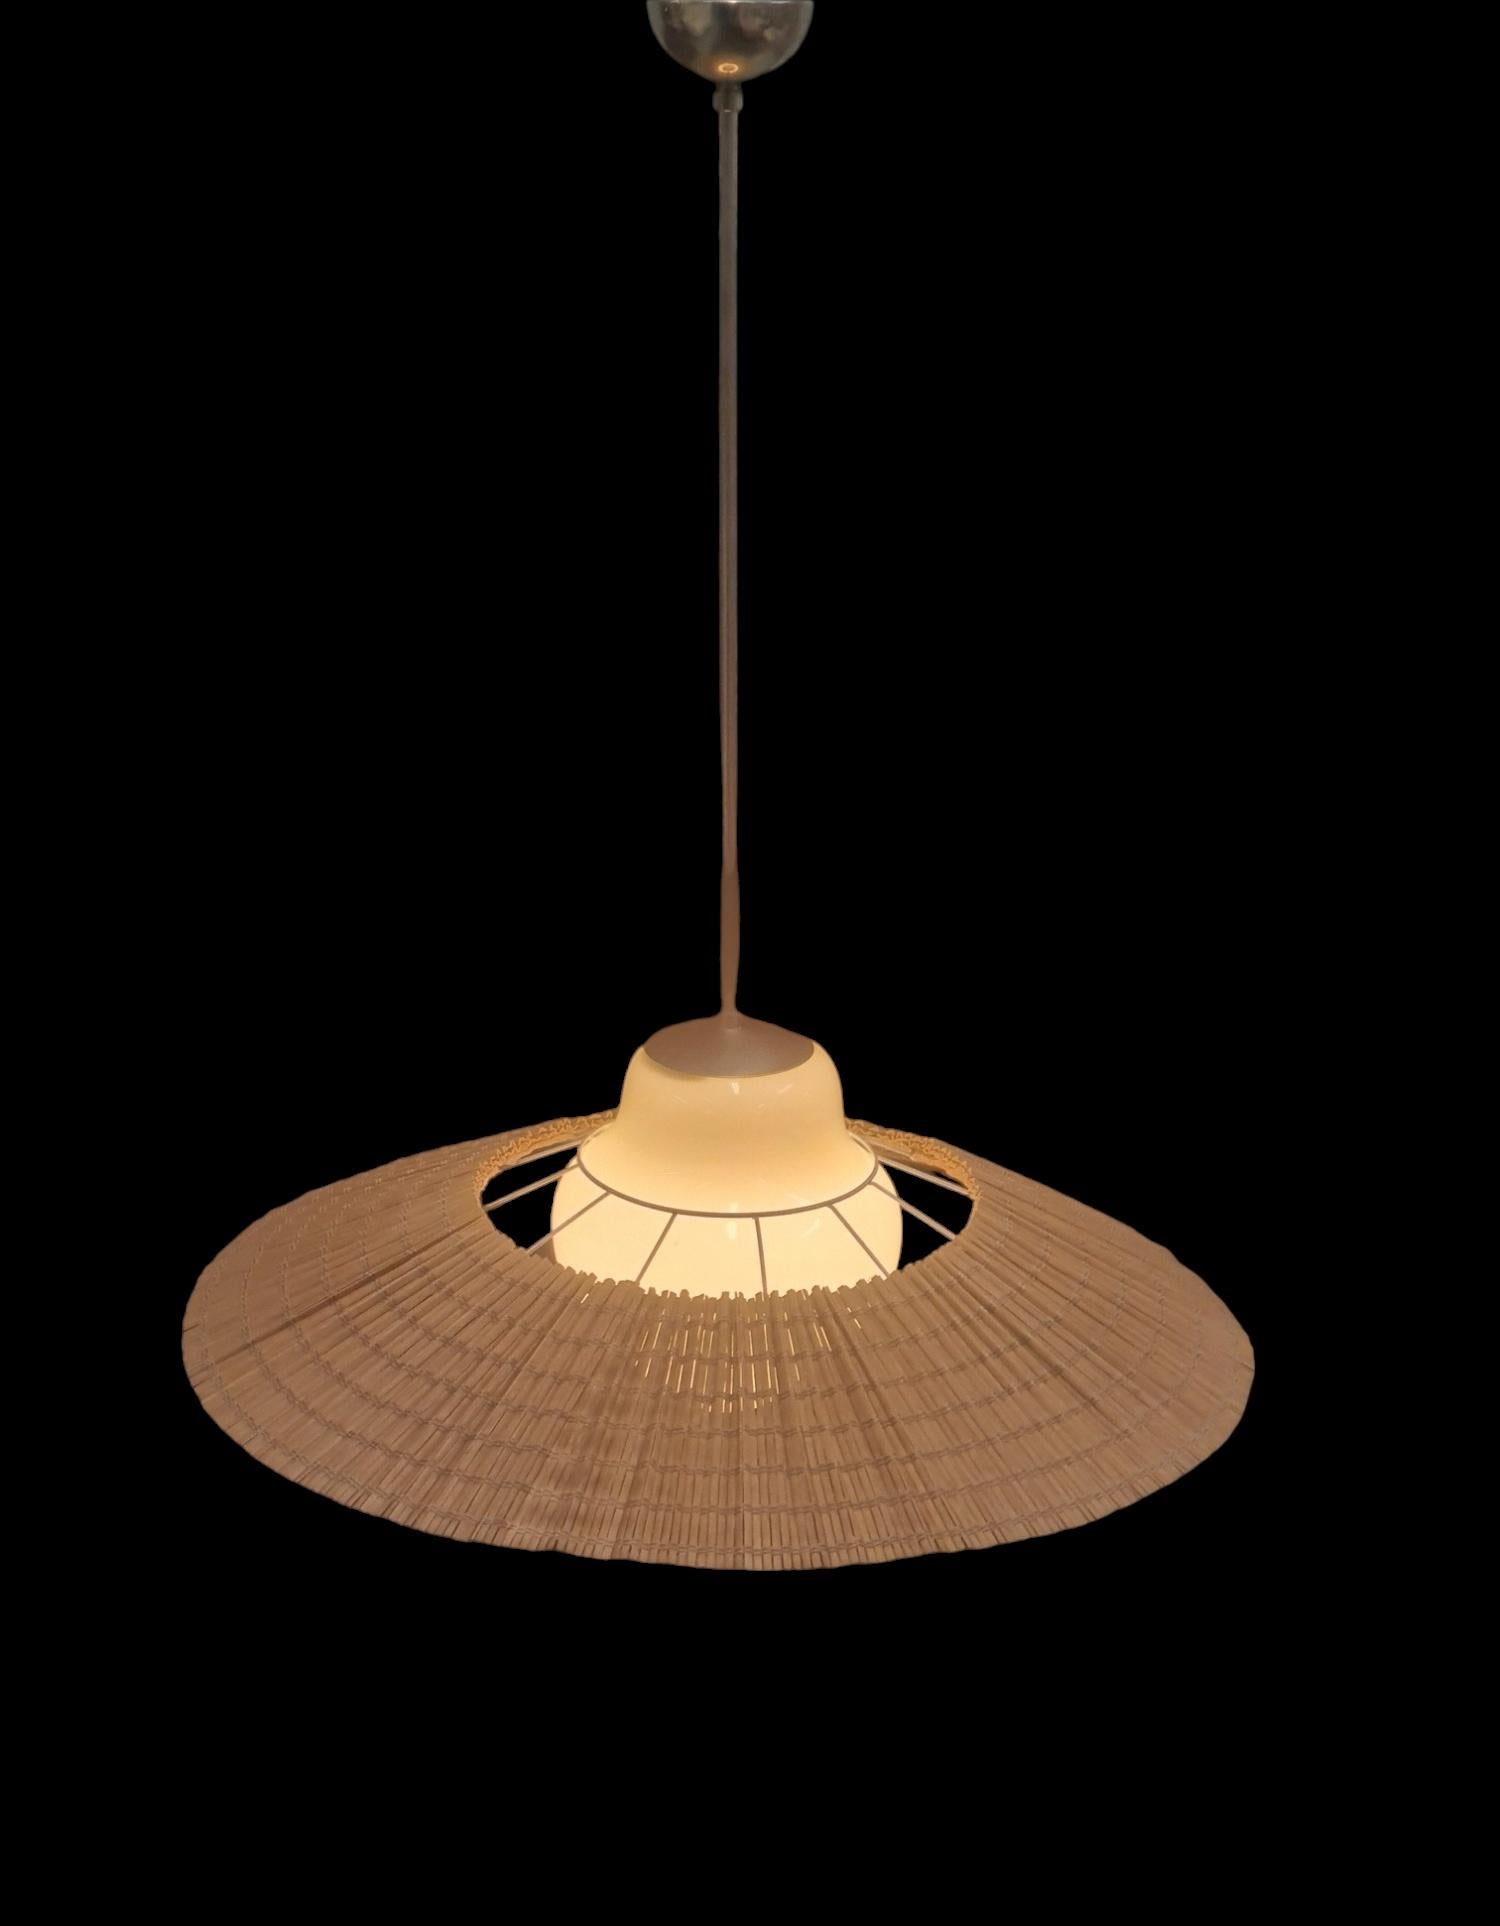 Lisa Johansson-Papé Ceiling Lamp model 1088, Orno 5